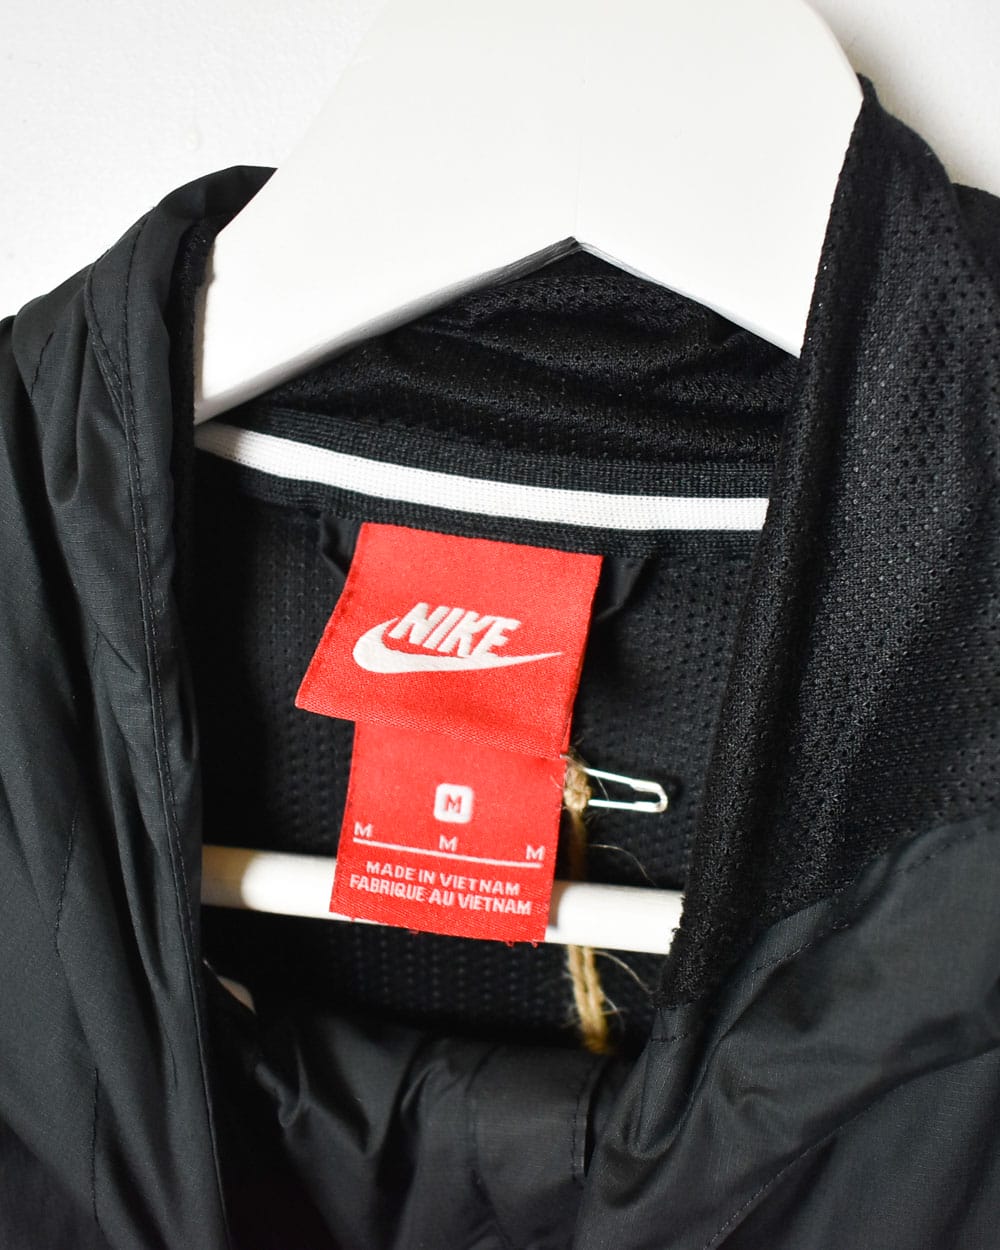 Black Nike Hooded Windbreaker Jacket - Medium